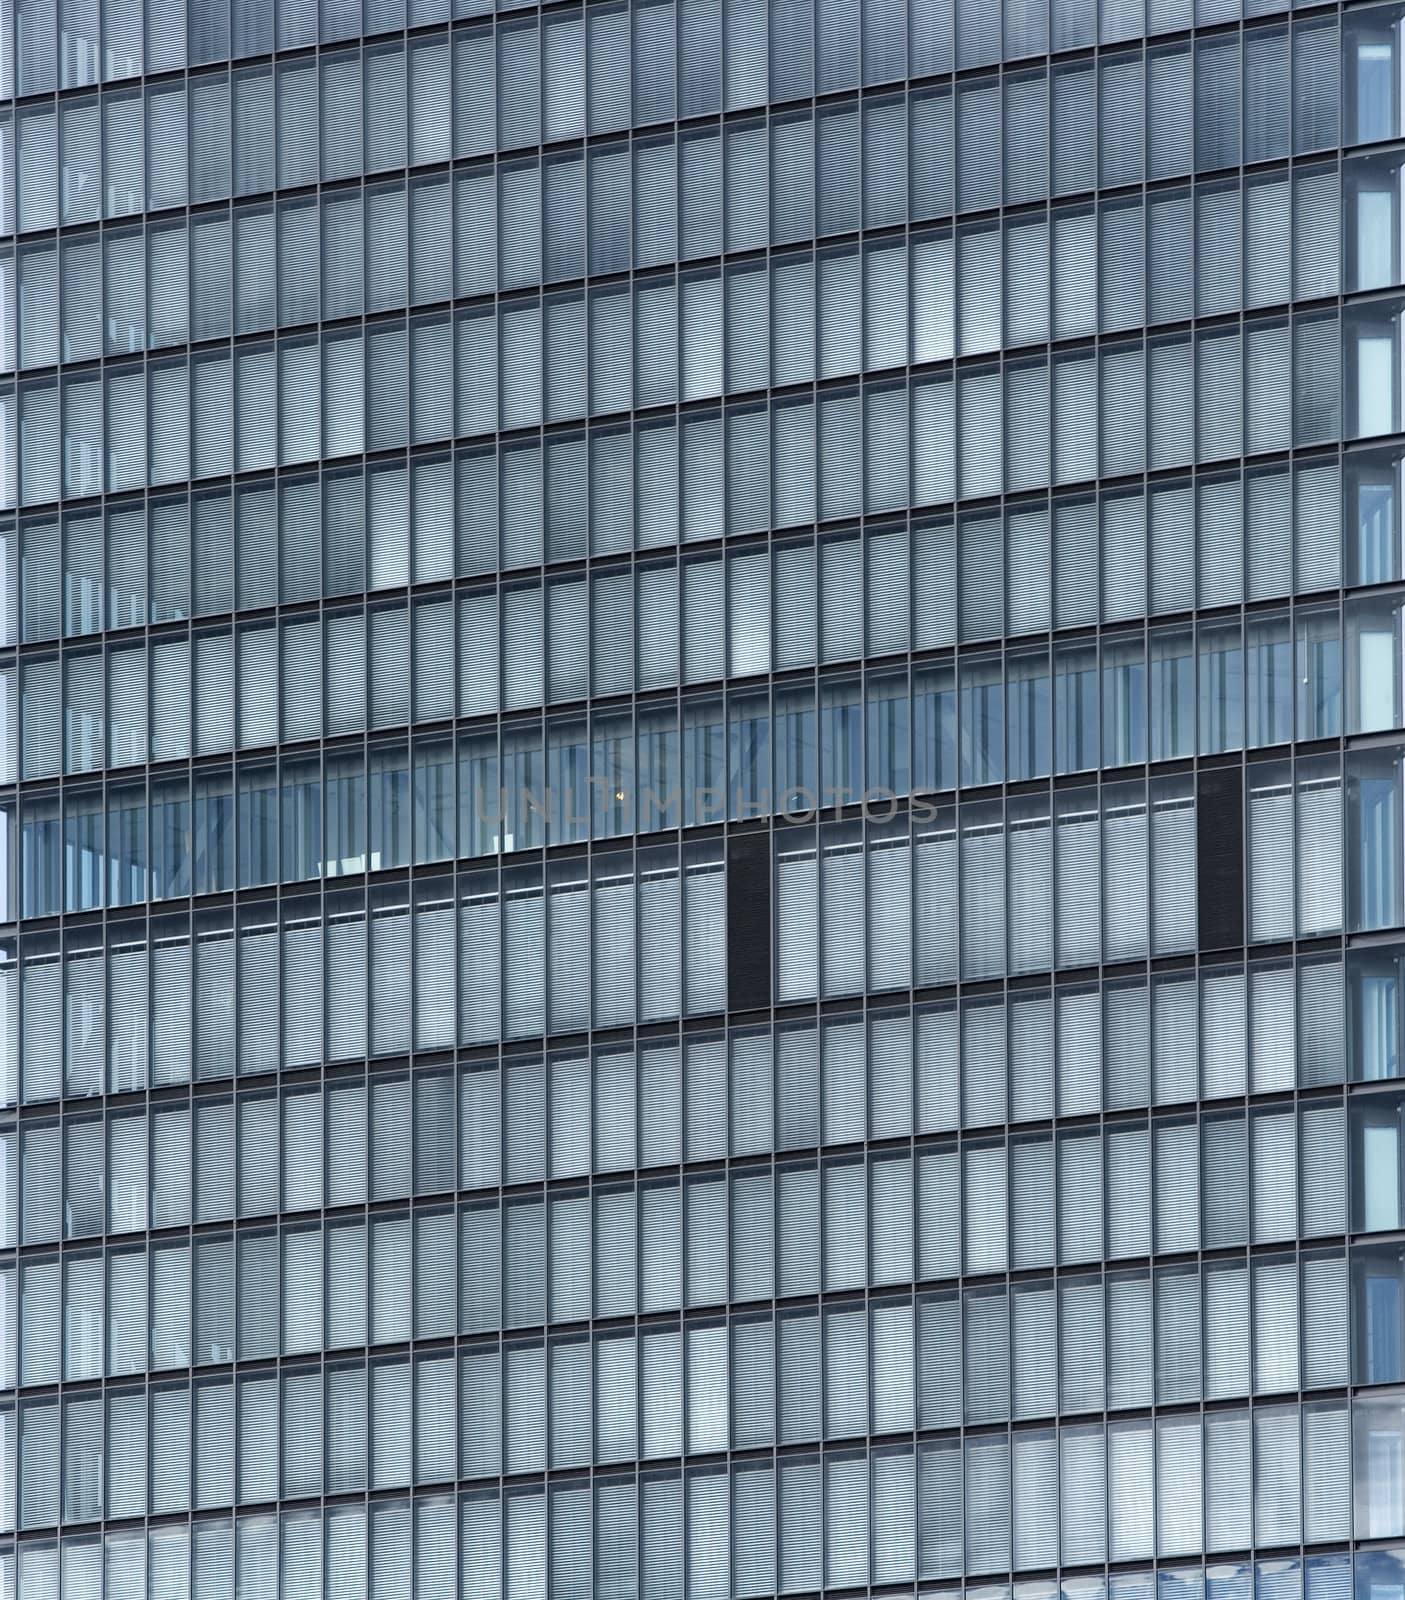 Full Frame of Office Building